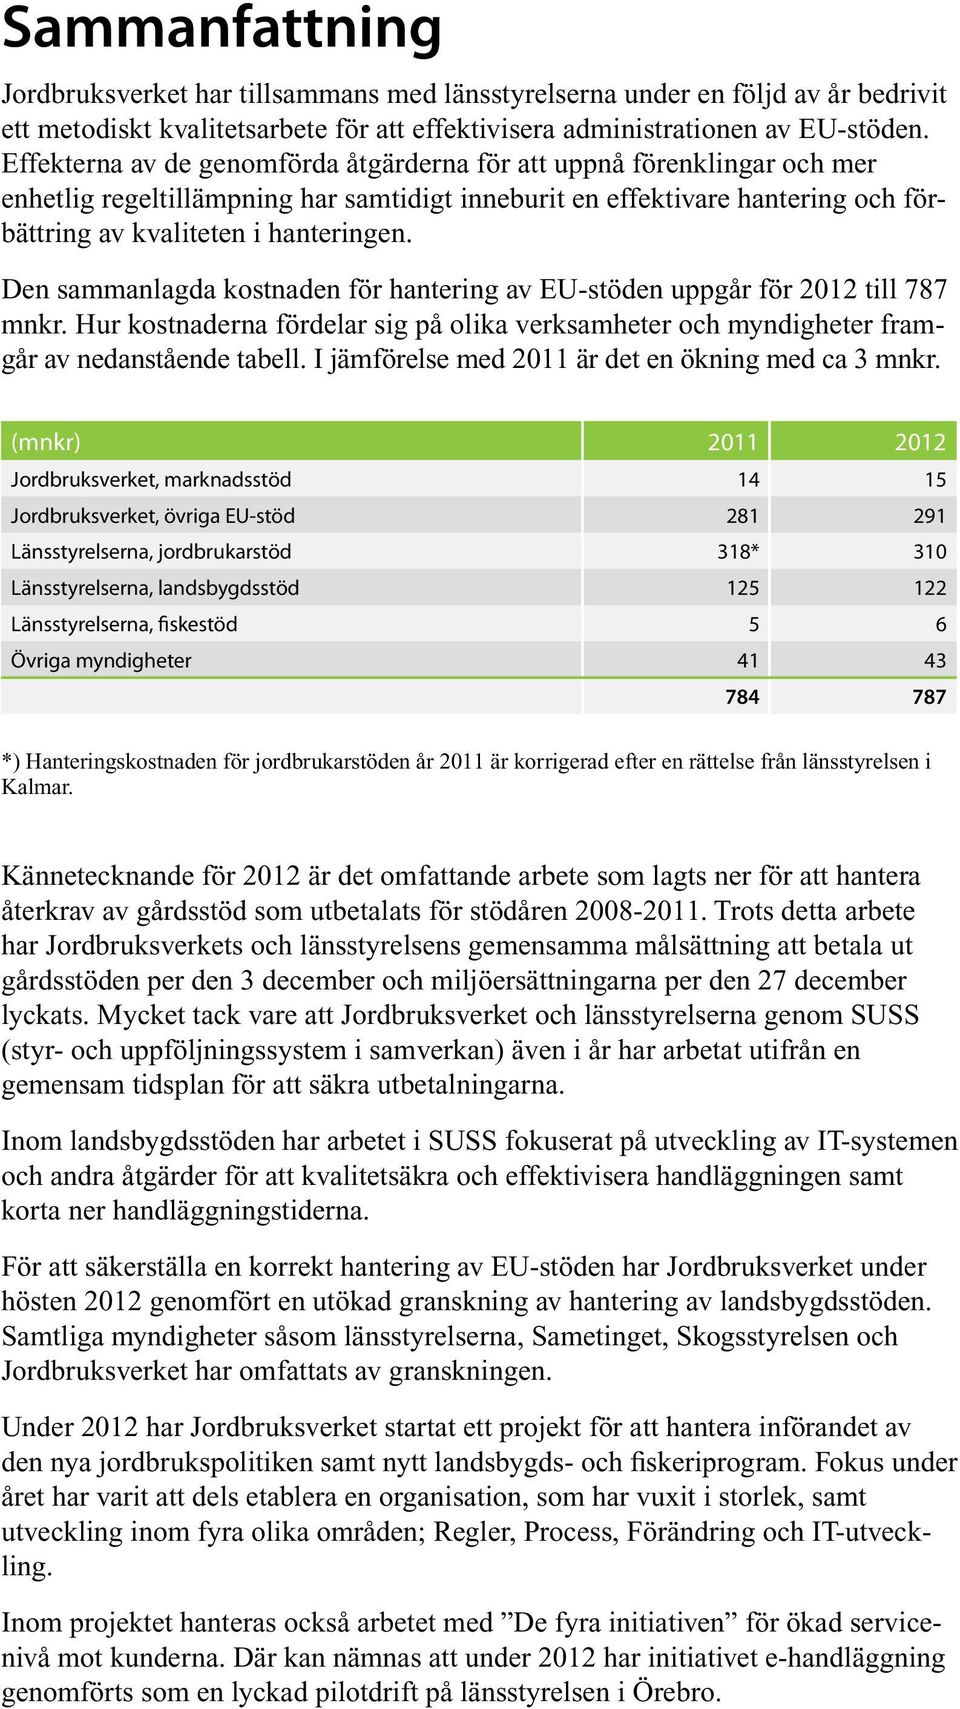 Den sammanlagda kostnaden för hantering av EU-stöden uppgår för 2012 till 787 mnkr. Hur kostnaderna fördelar sig på olika verksamheter och myndigheter framgår av nedanstående tabell.